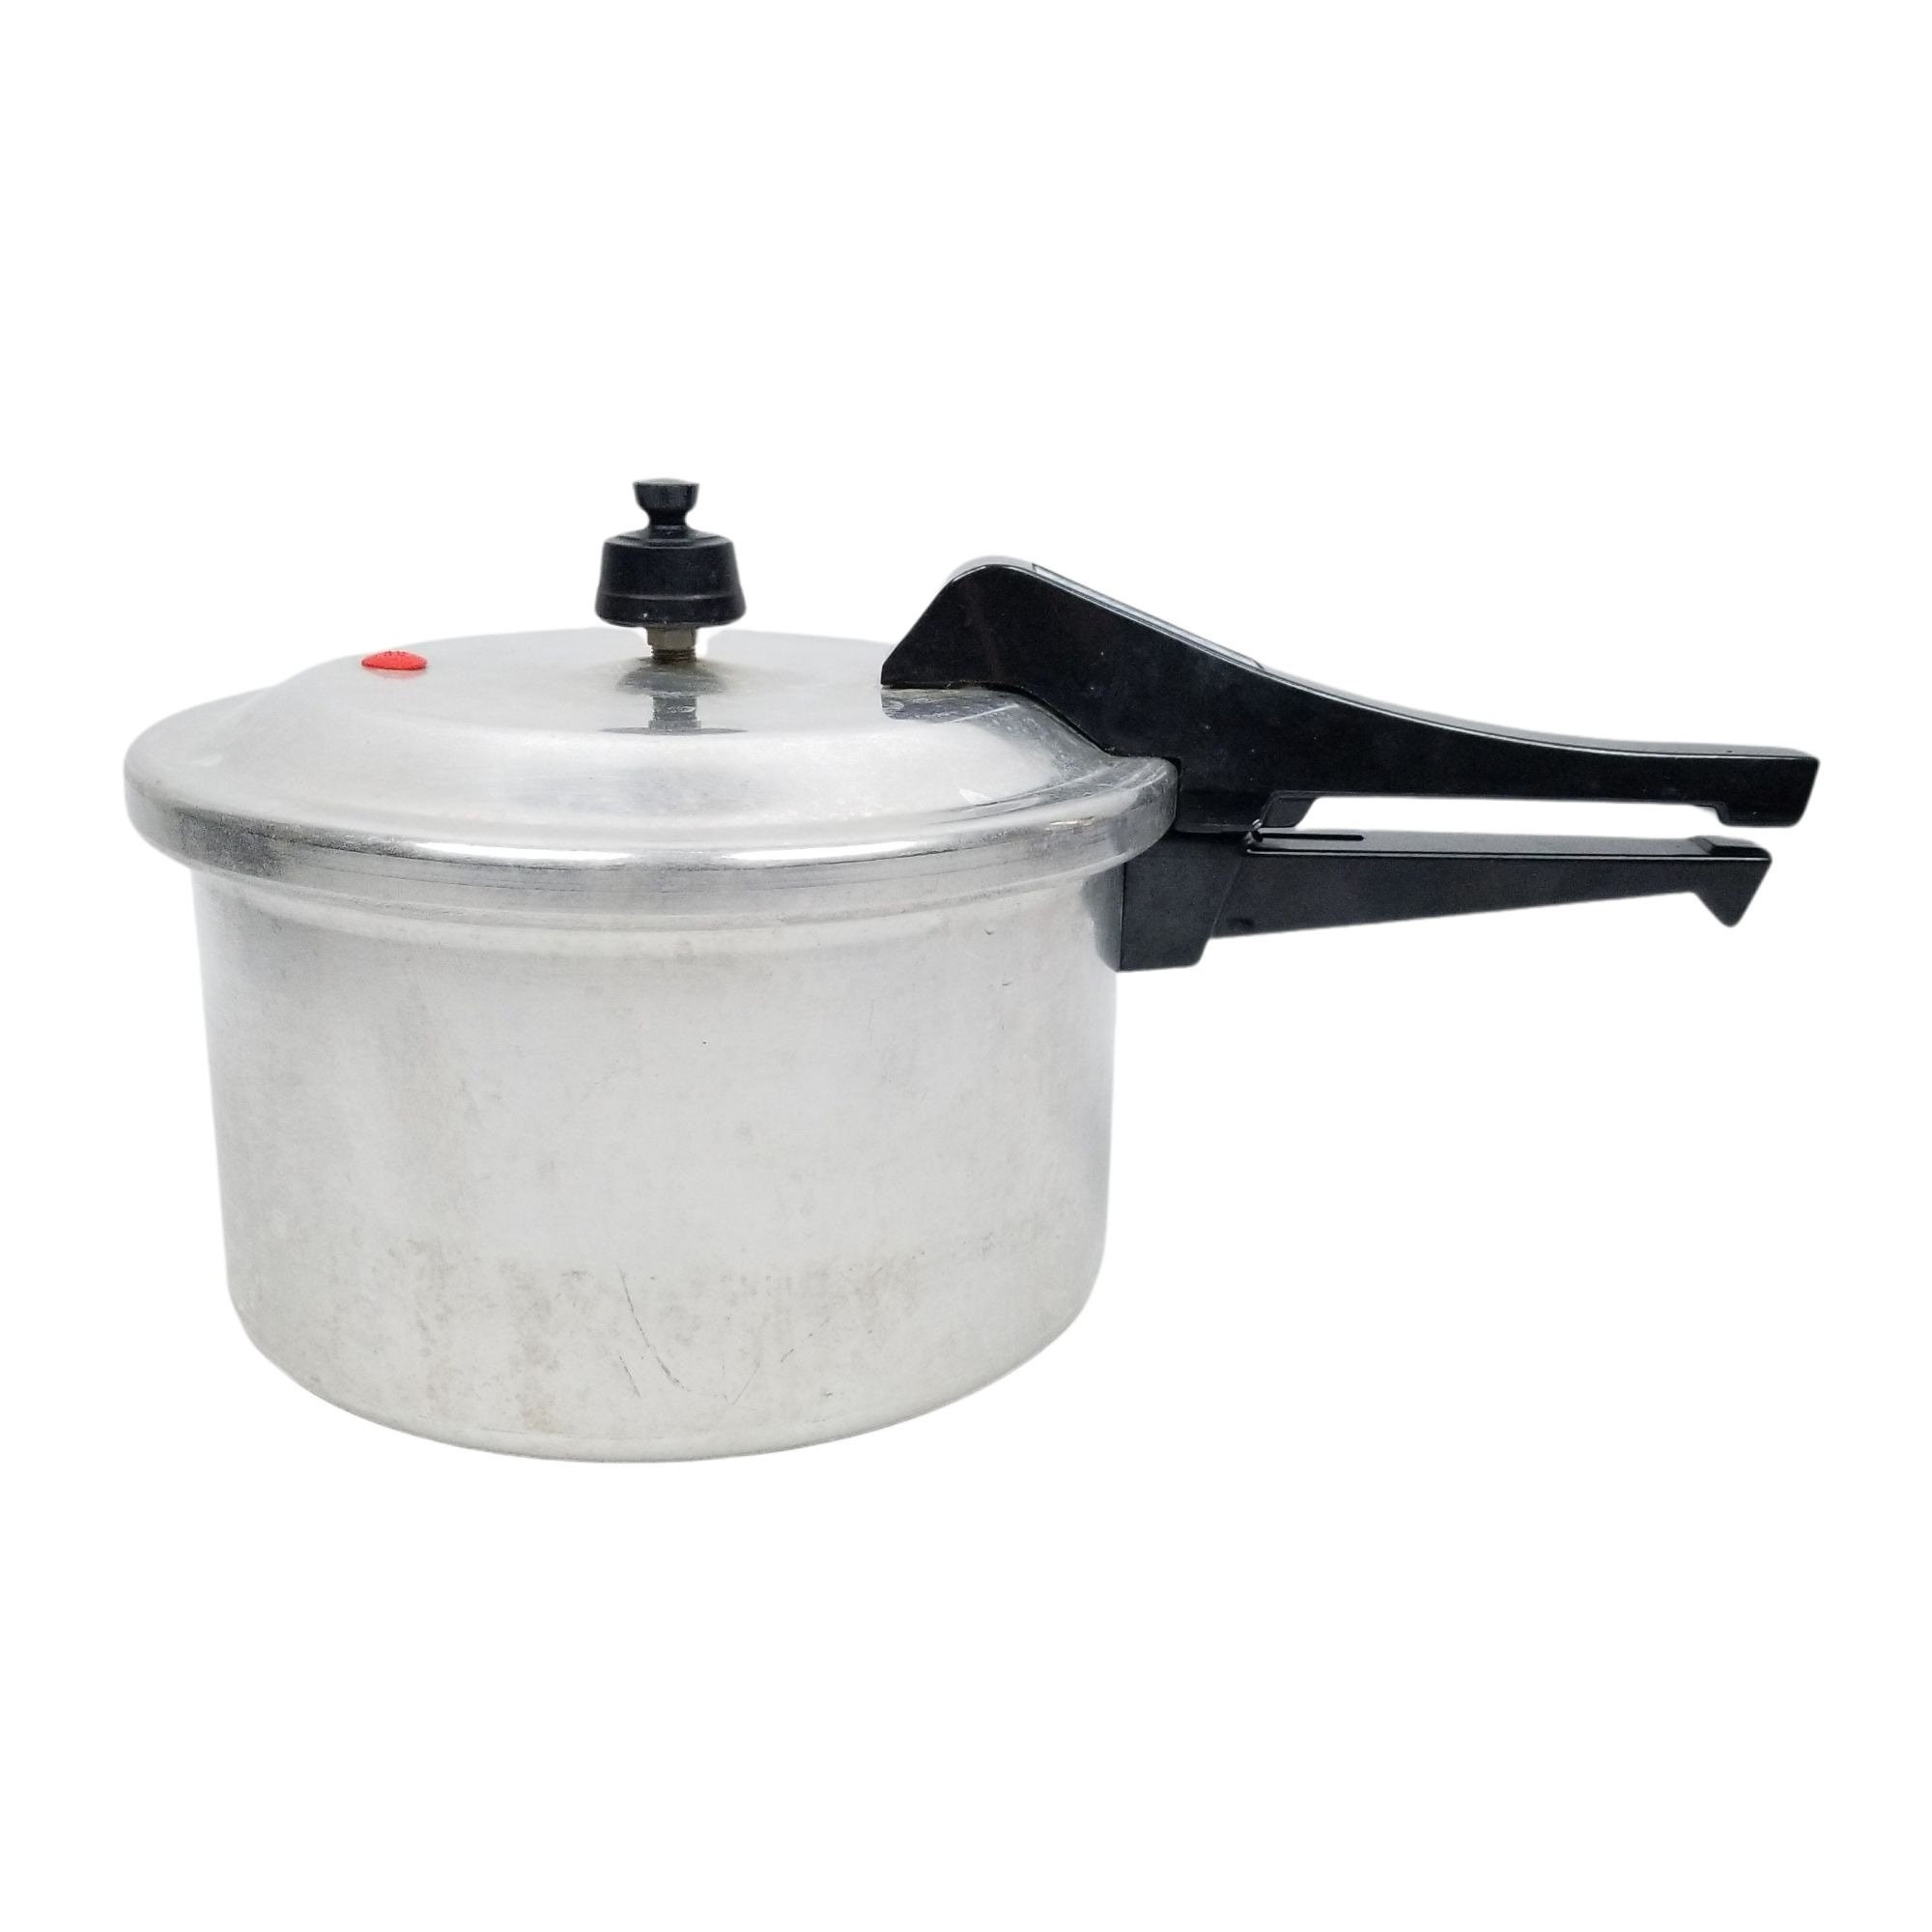 Pressure cooker Cauldron afghan instant 6qt/6L CAMPING POT/CAMPING